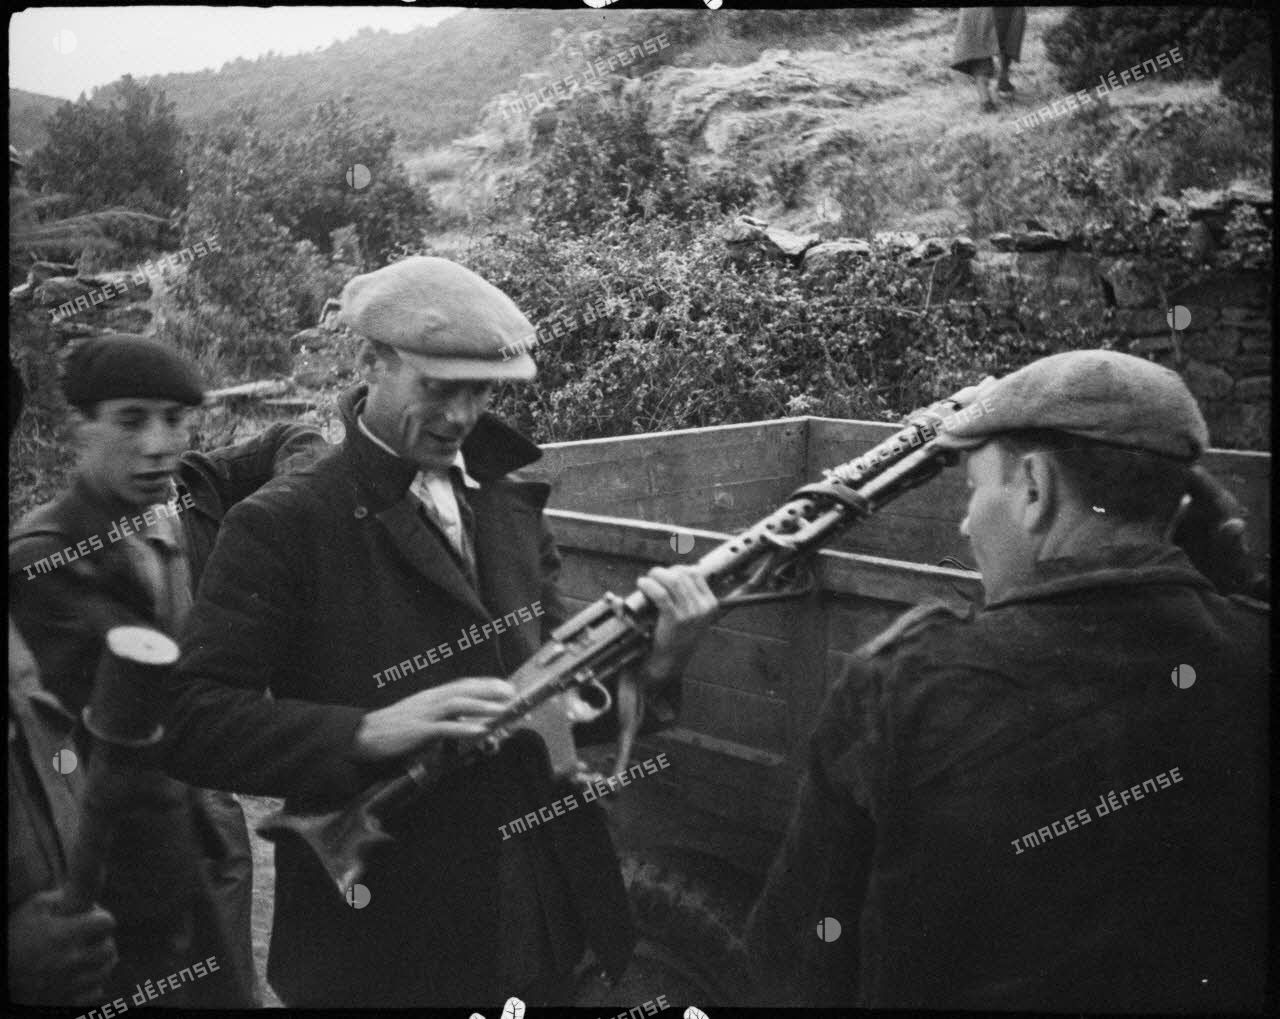 Des partisans corses examinent du matériel abandonné par les Allemands et entreposé dans un camion : des casques, une MG-34 et son chargeur circulaire.